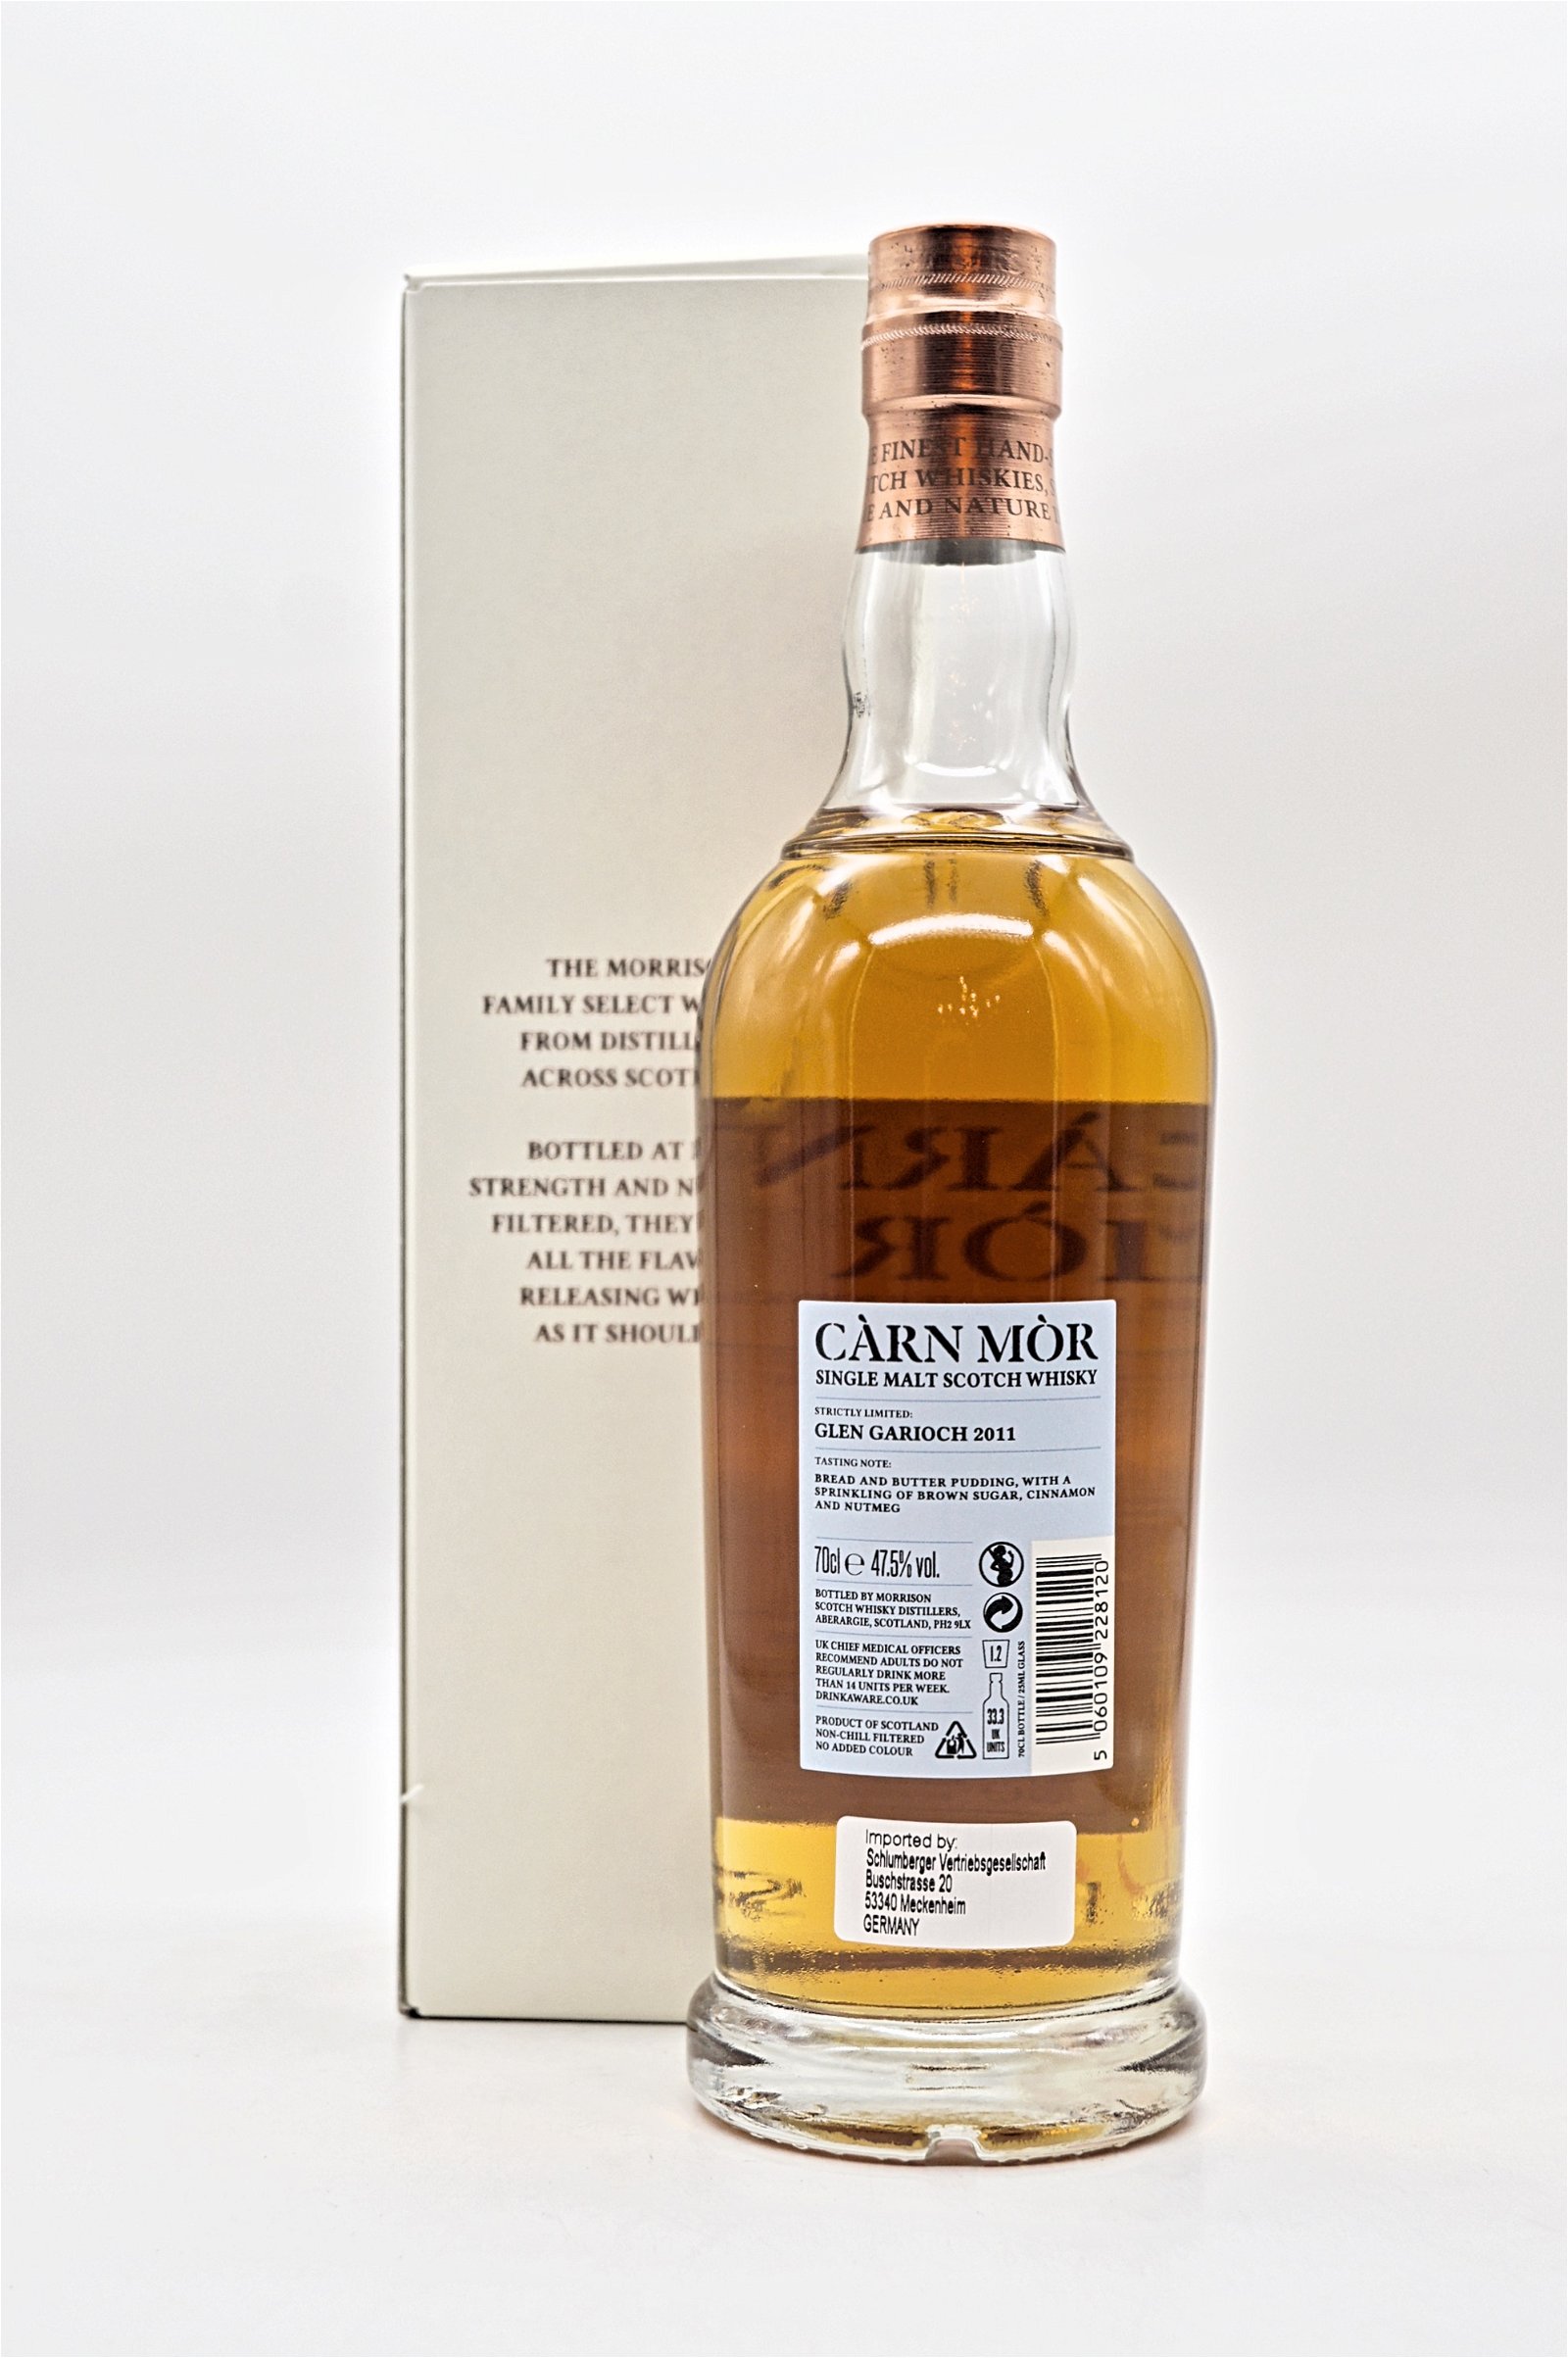 Carn Mor Glen Garioch 2011 Sherry Butt Strictly Limited Single Malt Scotch Whisky